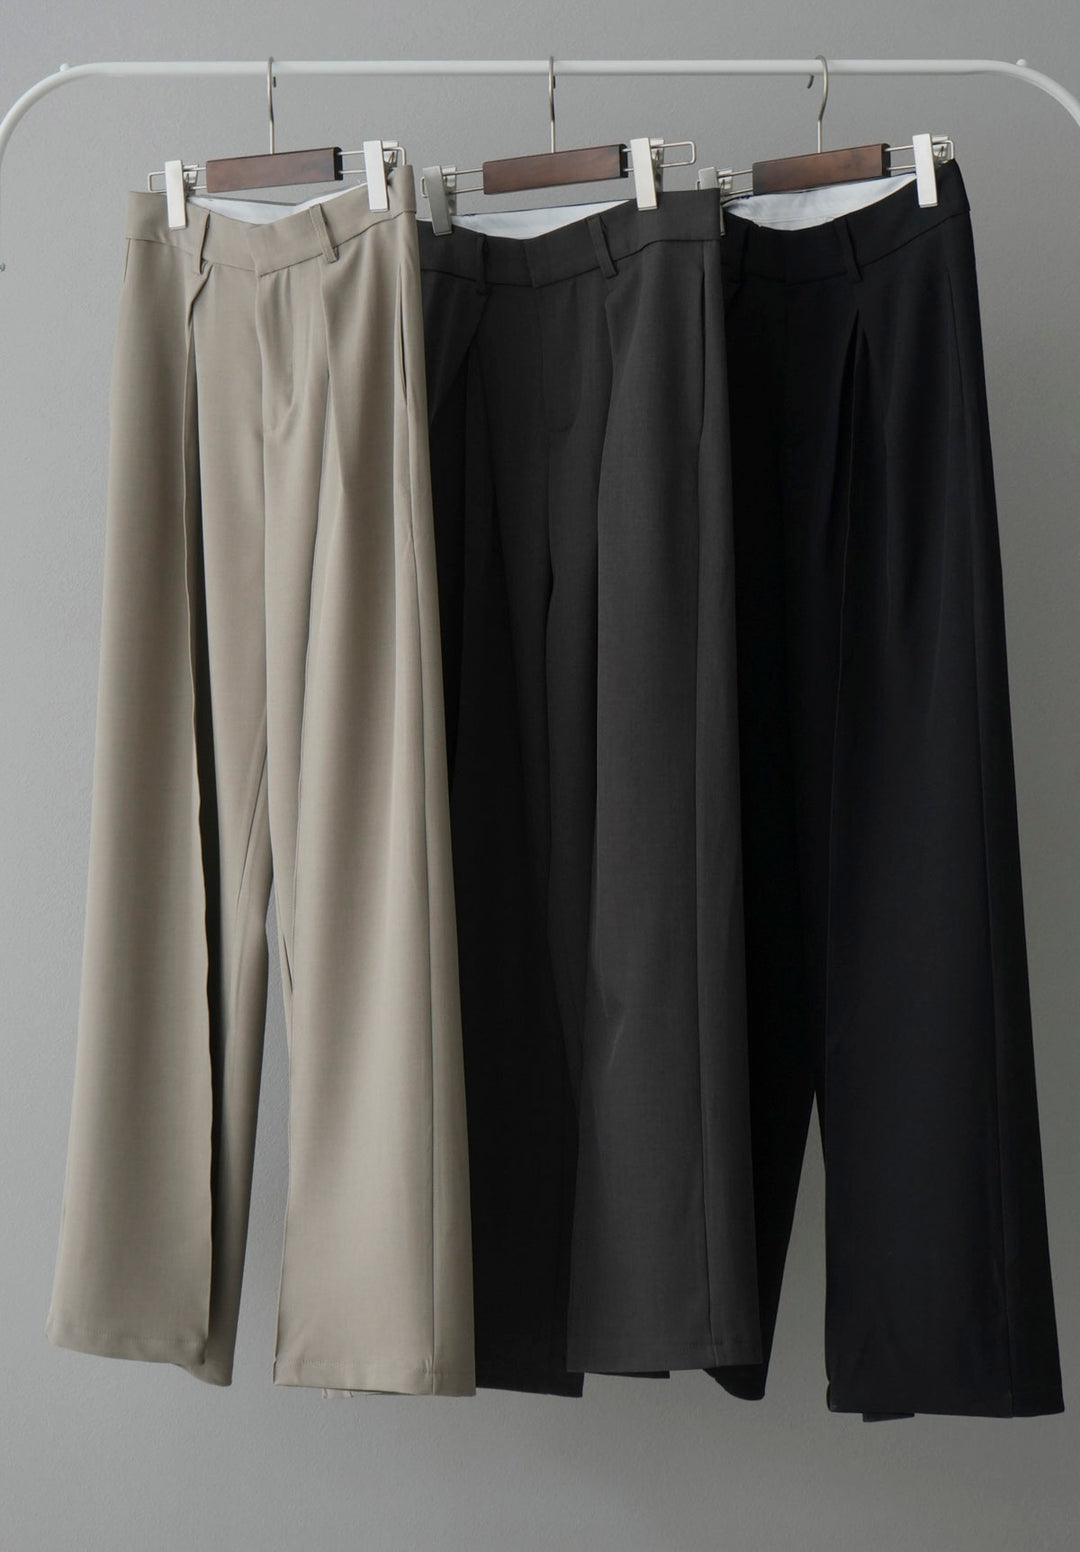 [混搭套裝] [SET] 豐盈袖水洗透明襯衫 + 透明分層羊毛吸汗套頭衫 + 設計褶邊寬褲/L (3 件套)